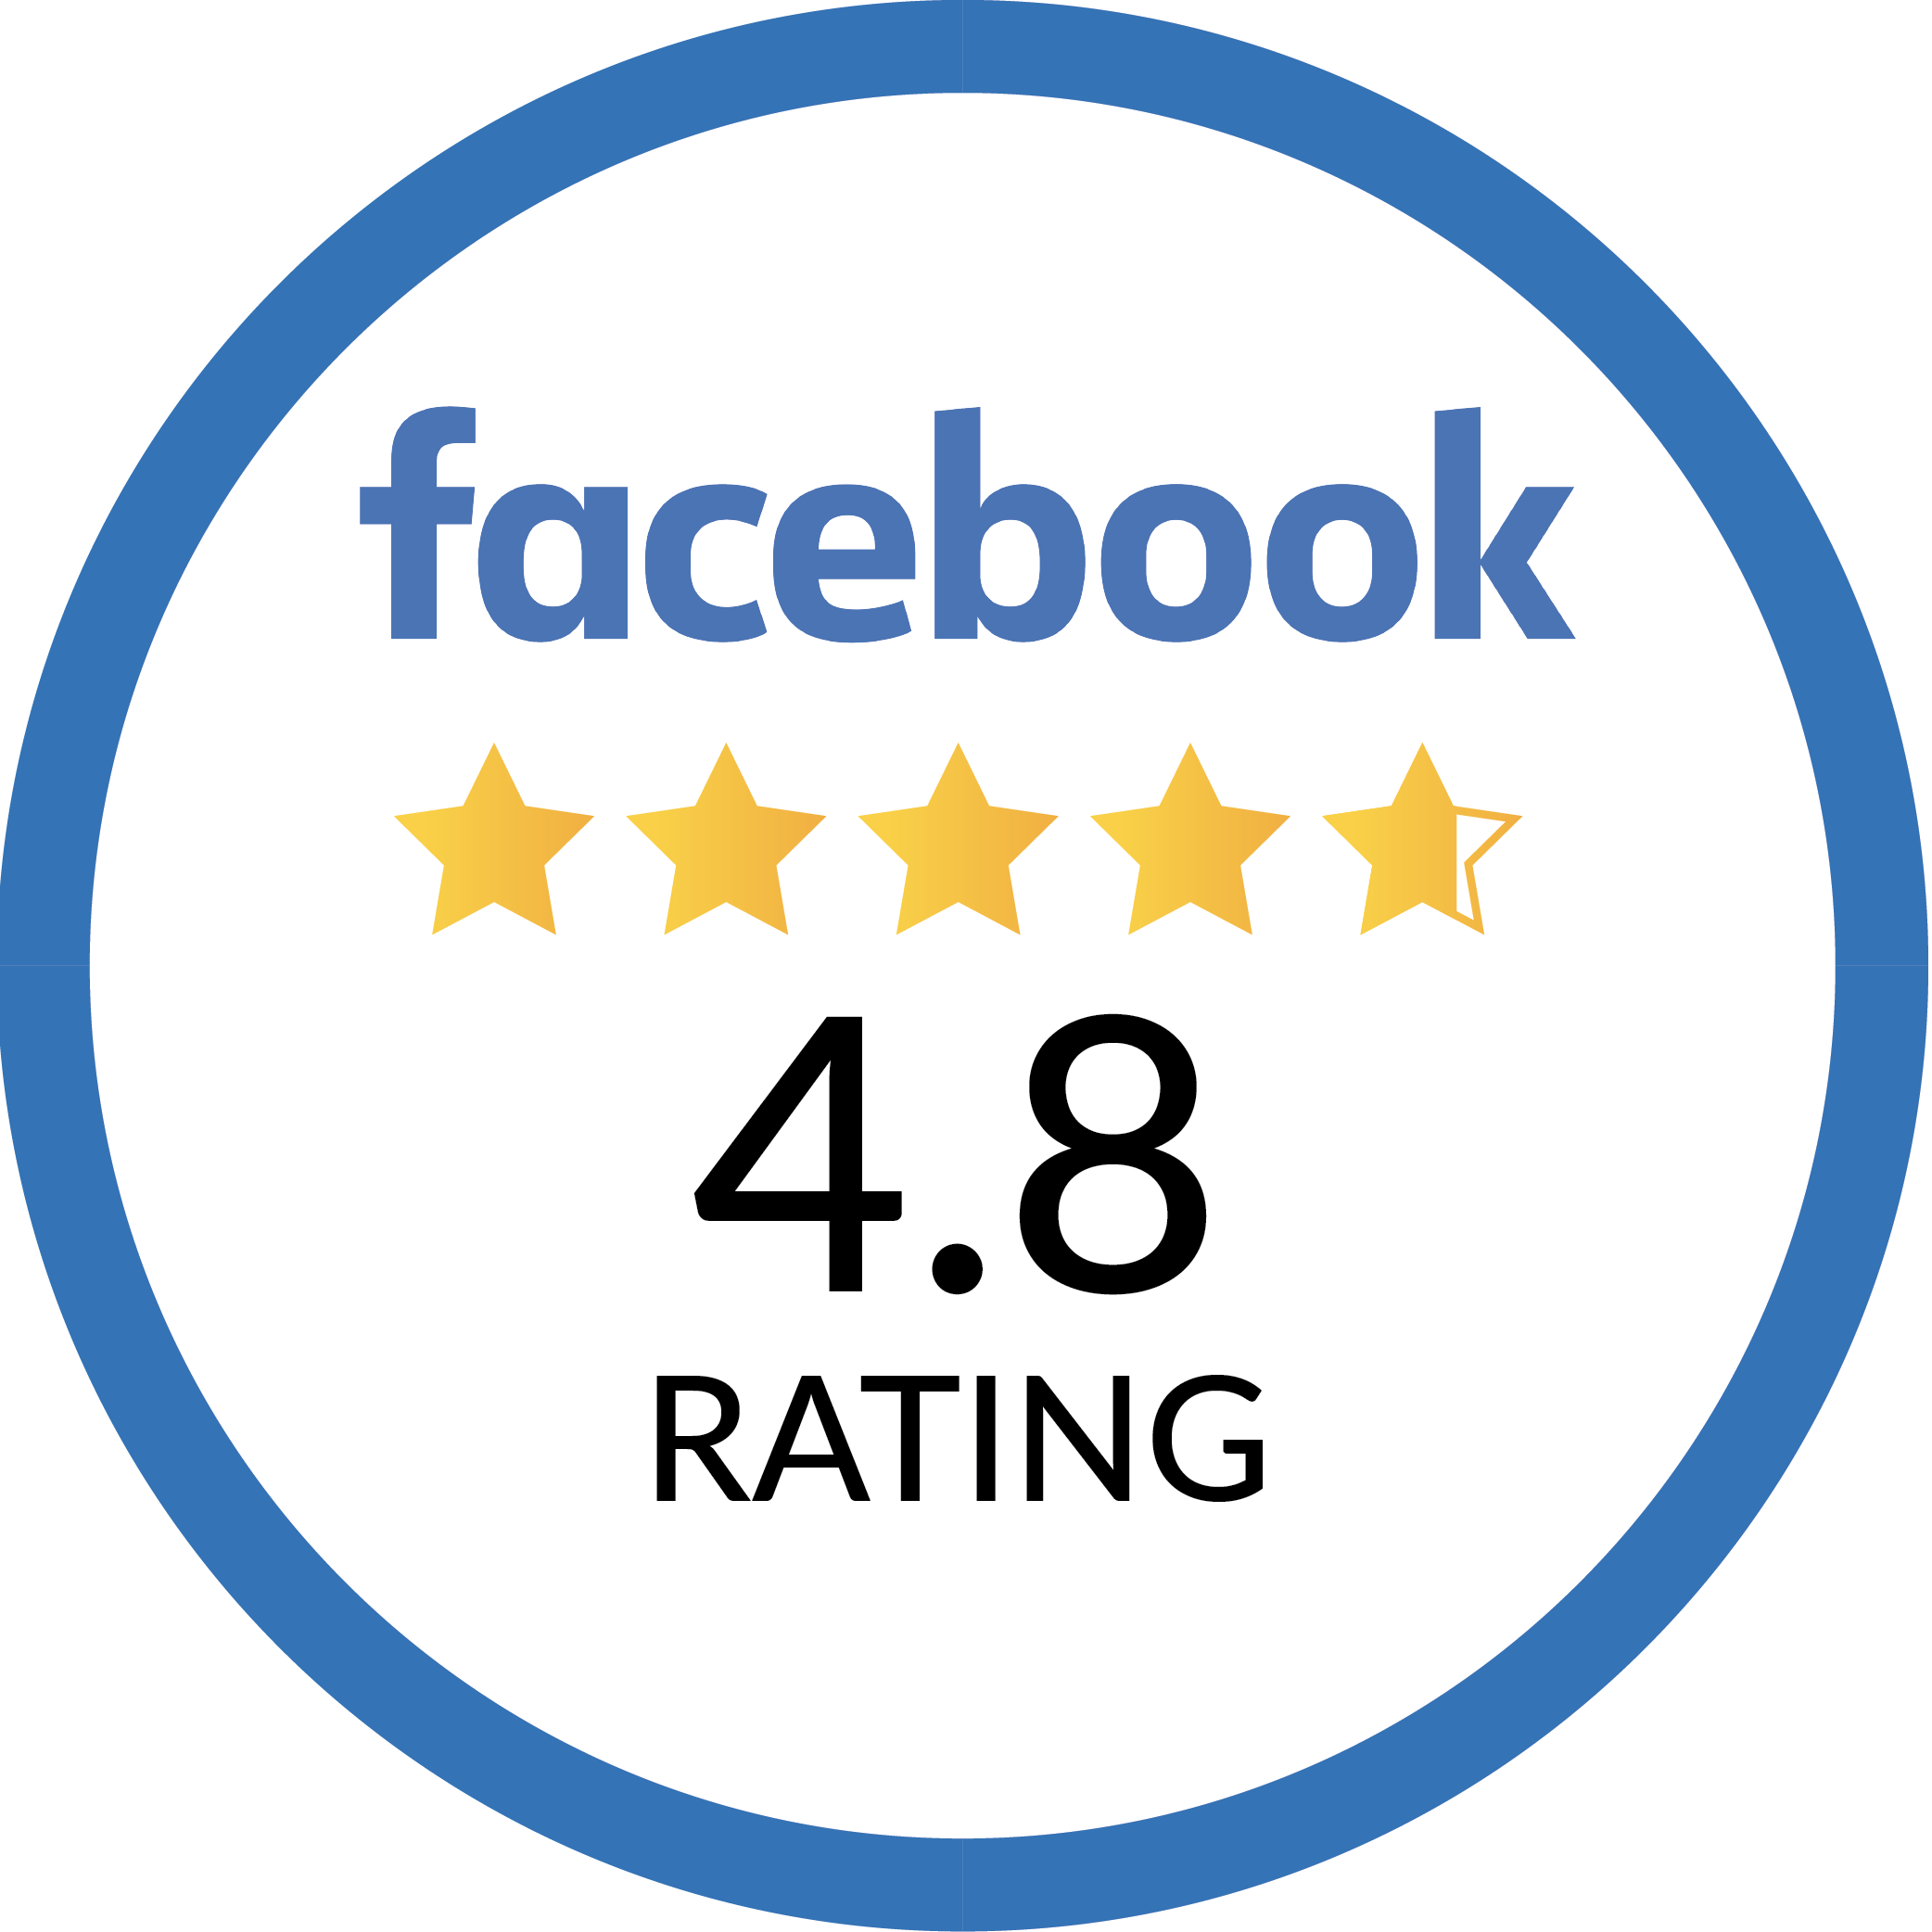 4.8 stars on facebook